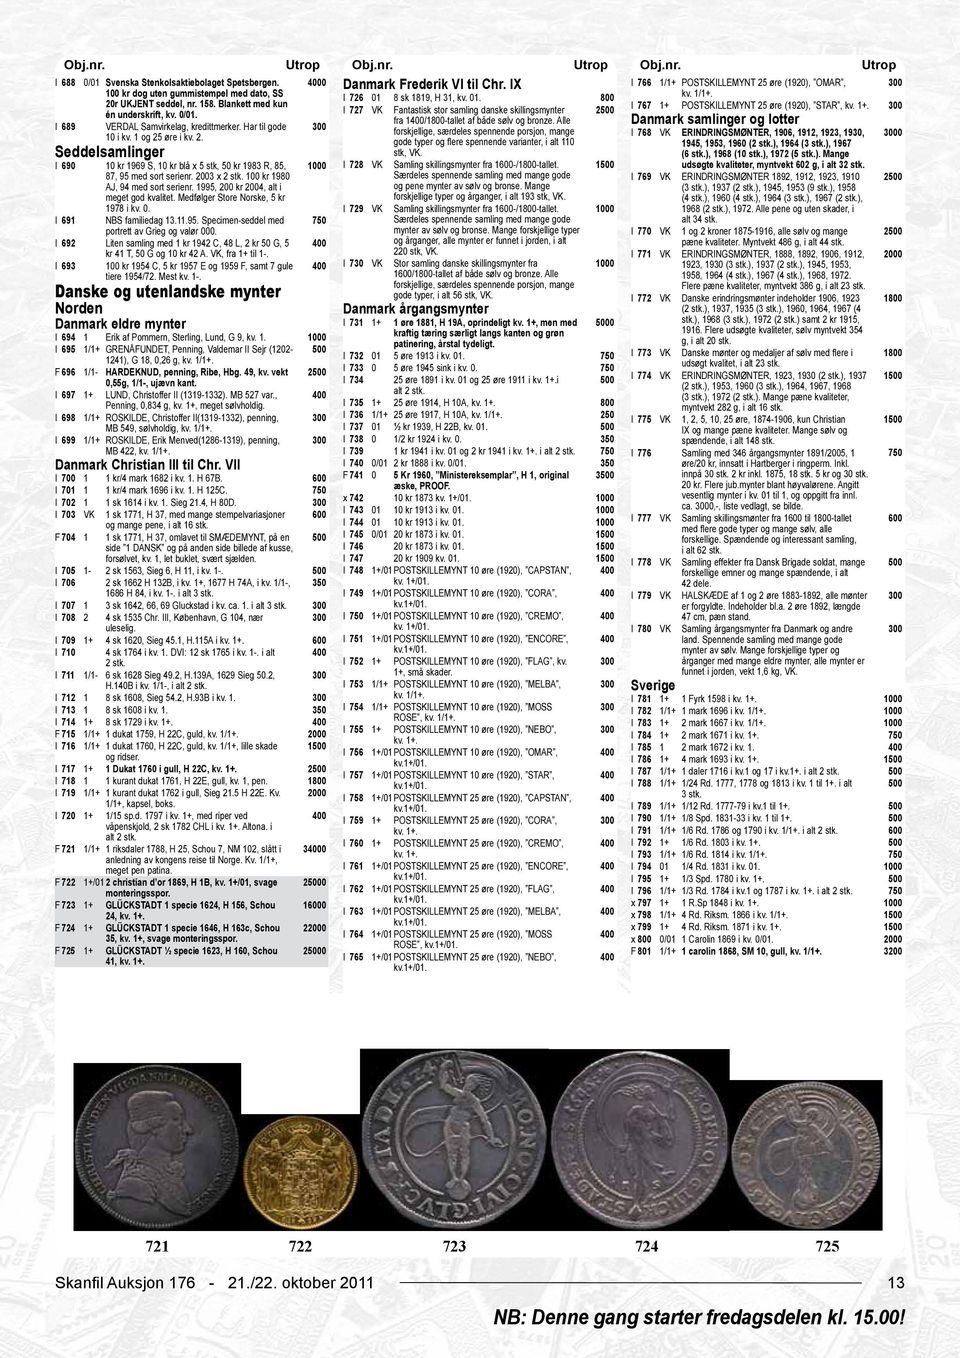 Blankett med kun I 727 VK Fantastisk stor samling danske skillingsmynter 2 I 767 1+ POSTSKILLEMYNT 25 øre (1920), STAR, kv. 1+. én underskrift, kv. 0/01. fra 1/1-tallet af både sølv og bronze.